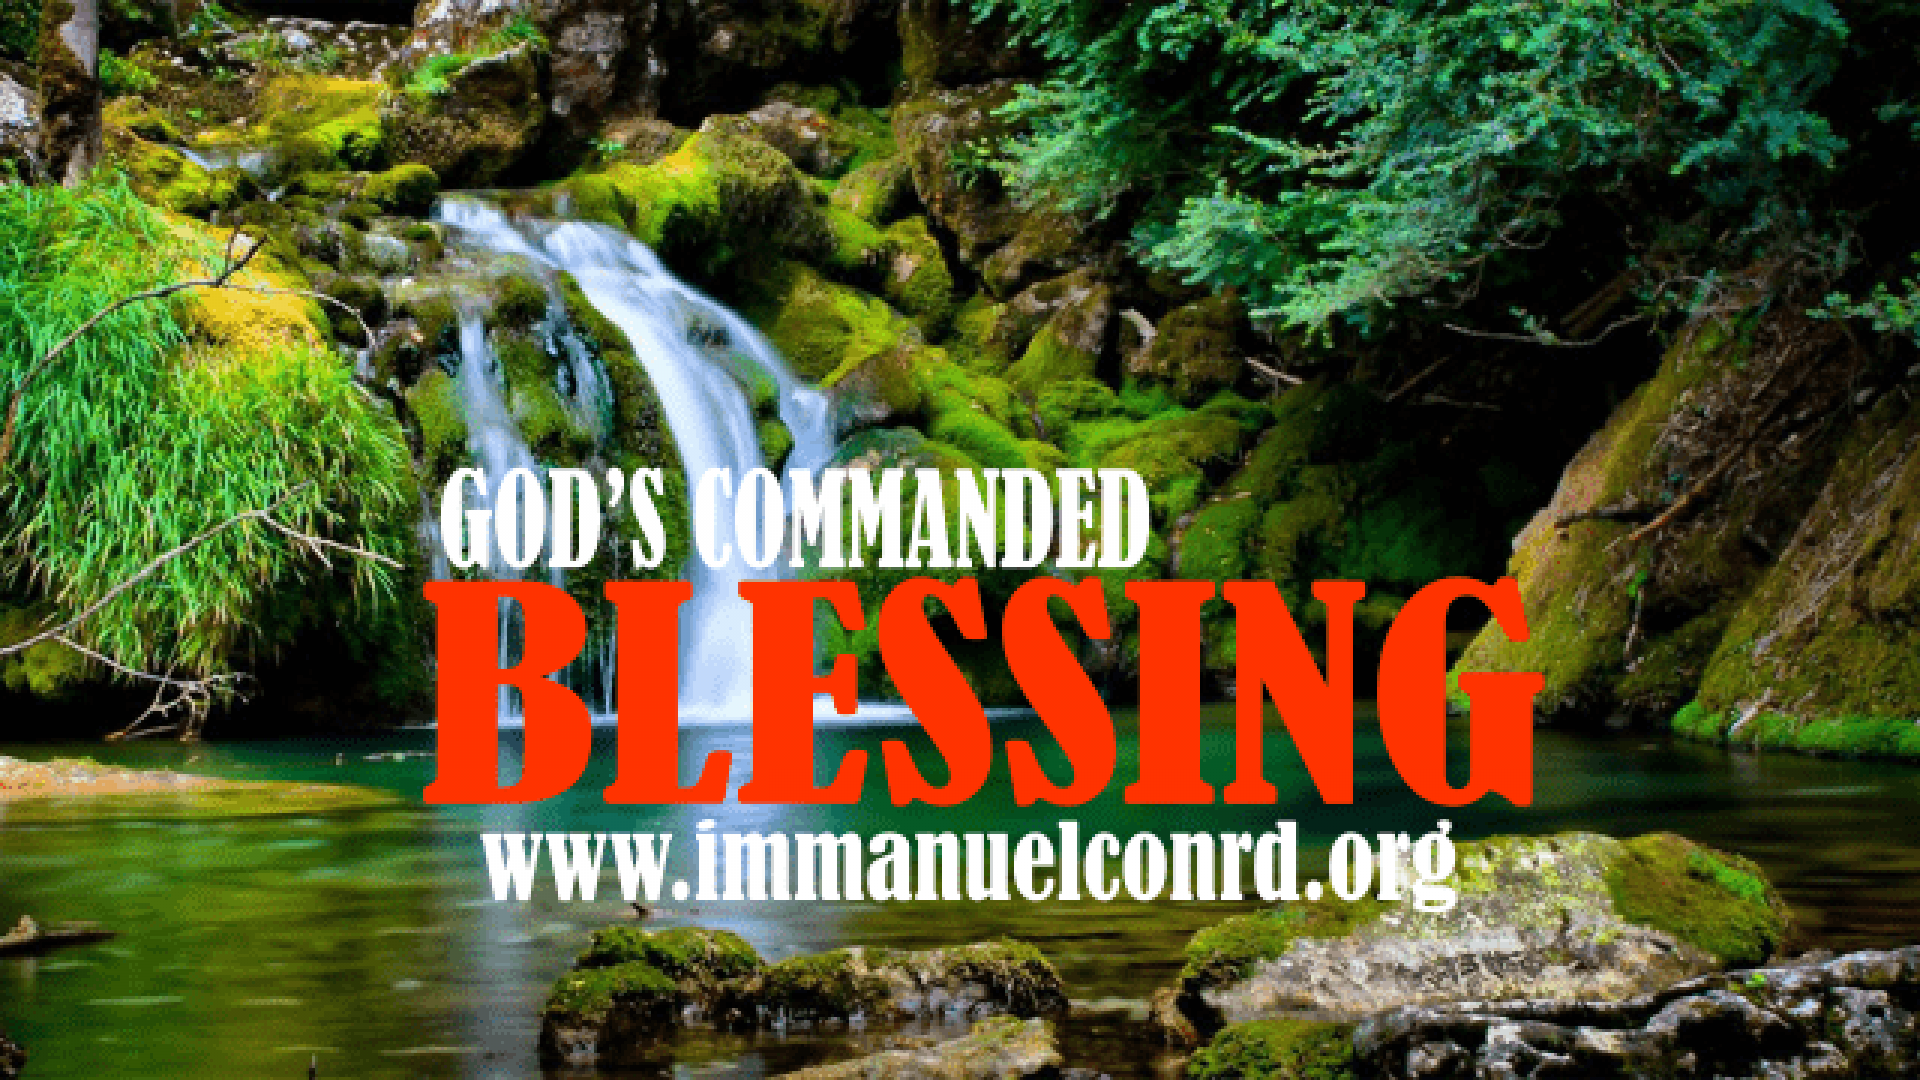 GOD’S COMMANDED BLESSING